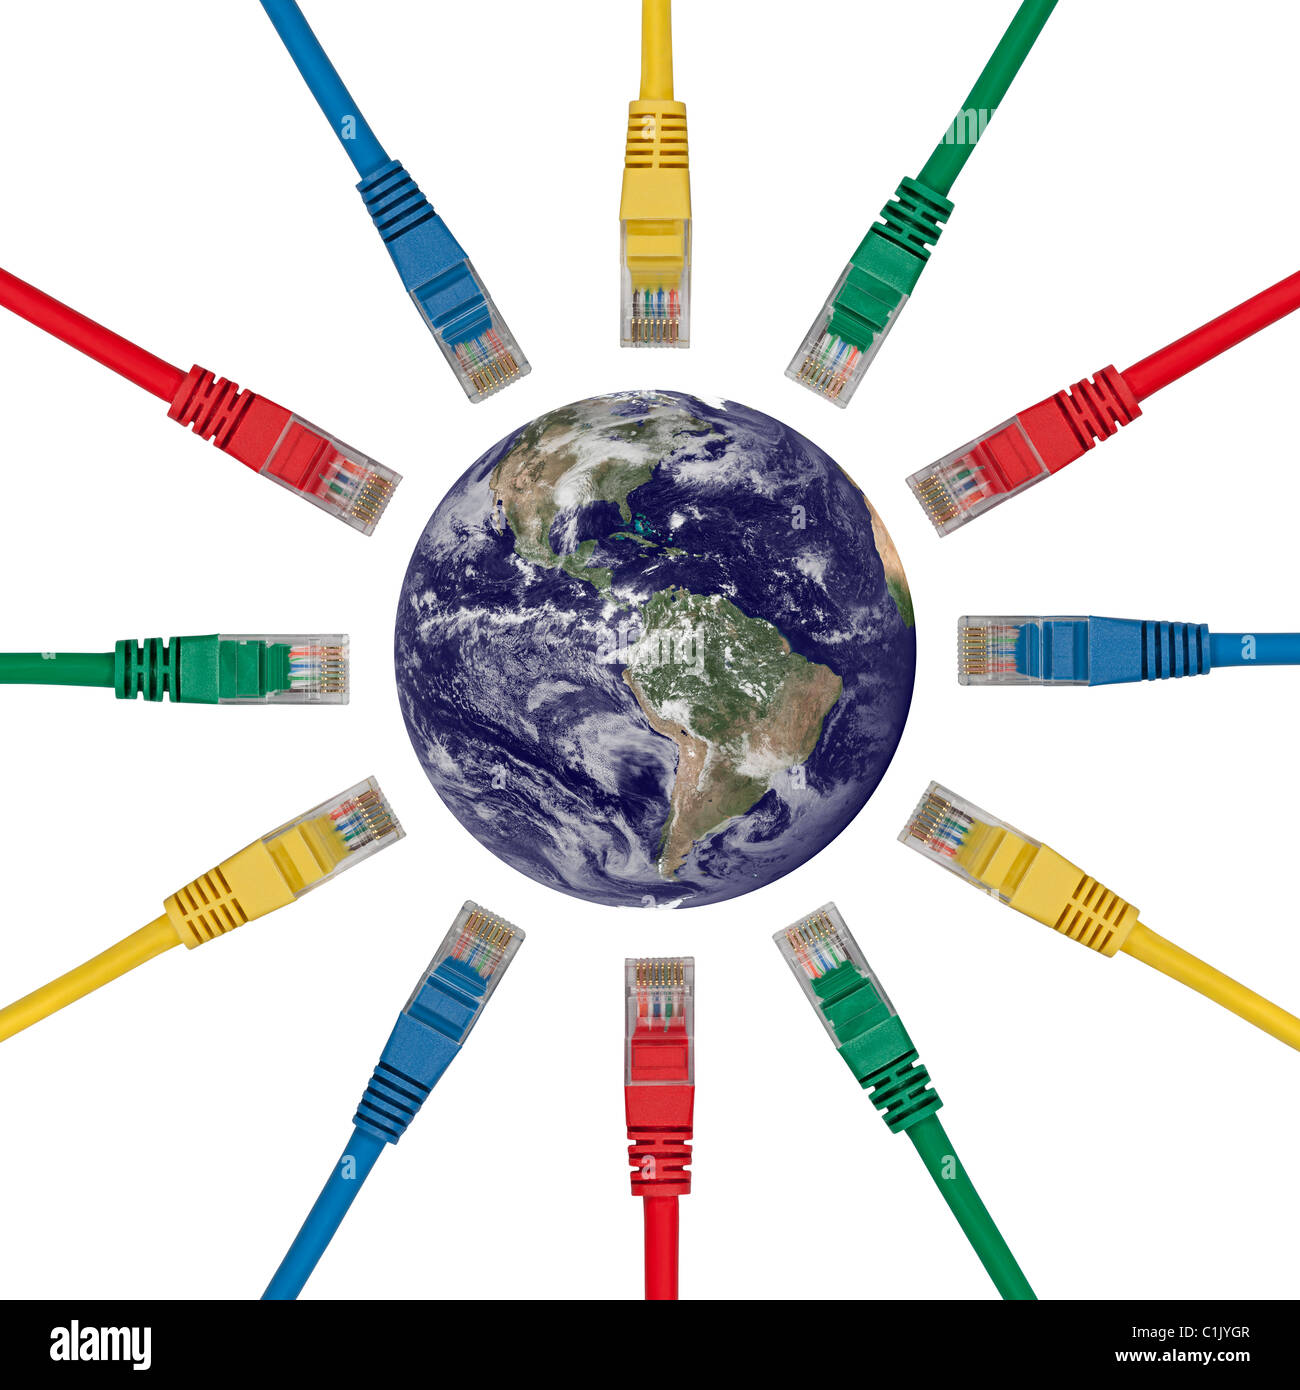 Les fiches de connexion réseau pointant sur un hémisphère ouest de la Terre - Amériques Banque D'Images